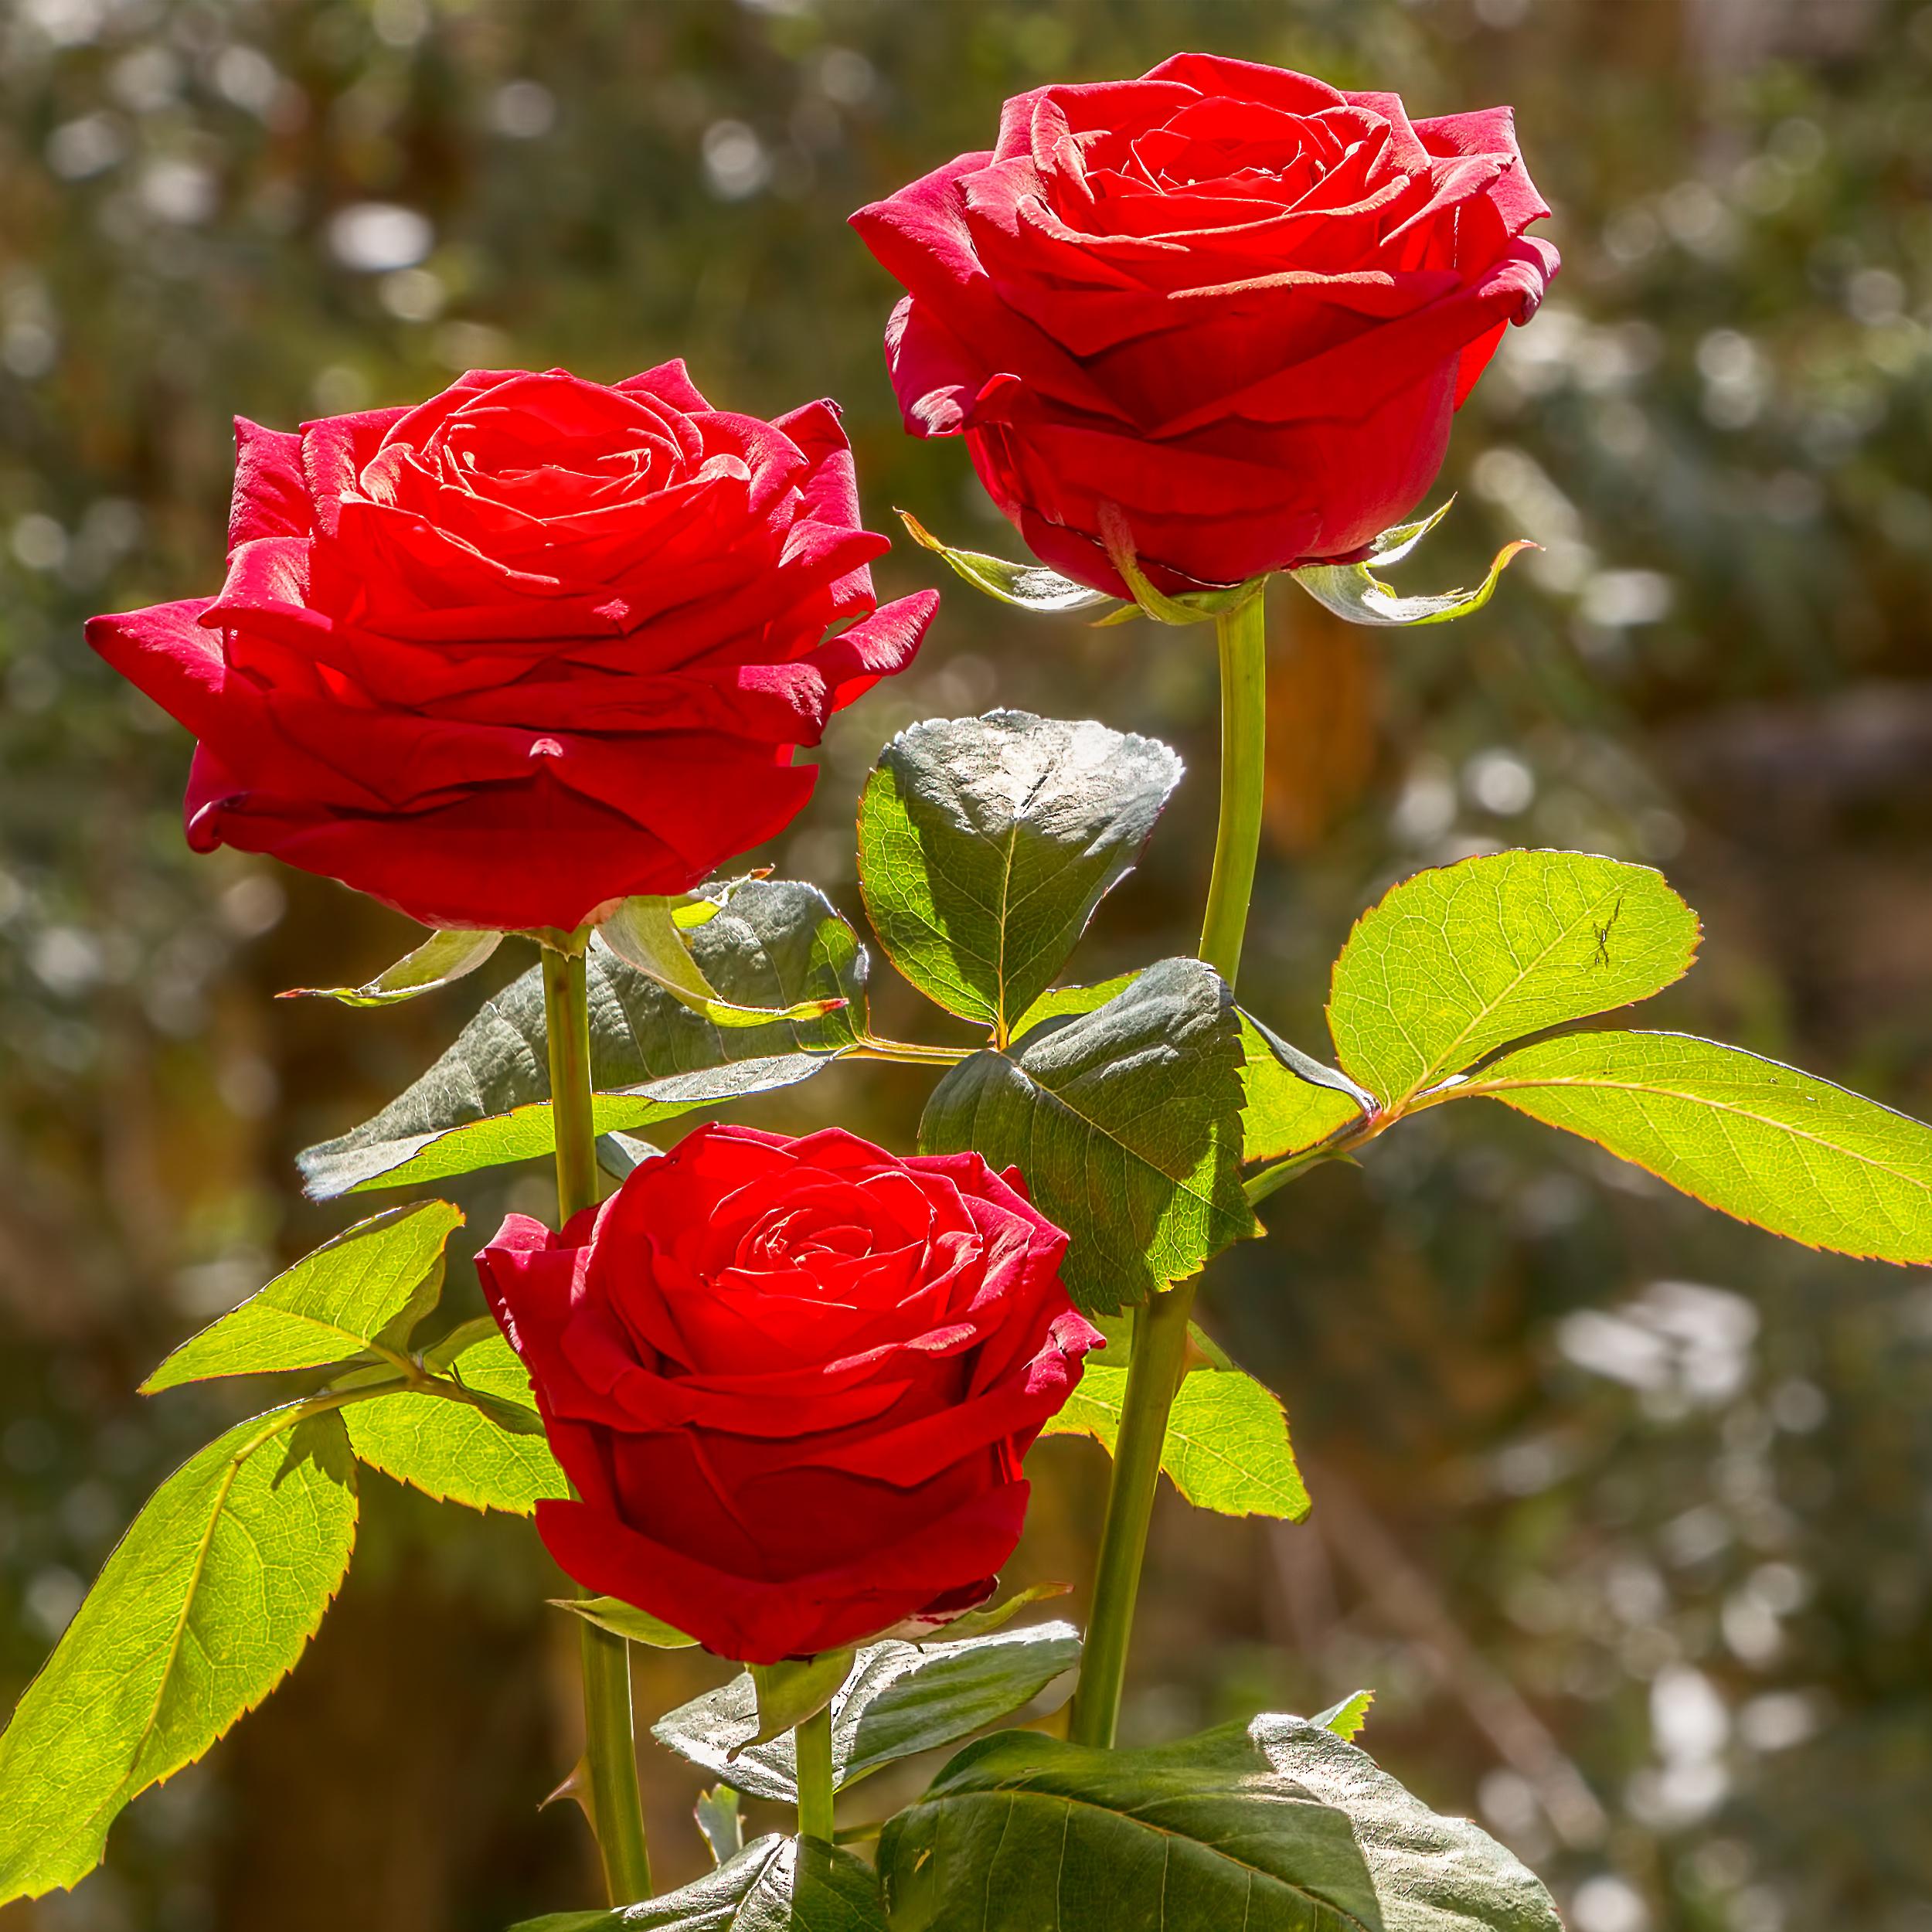 три алые розы -3 красных розы.jpg